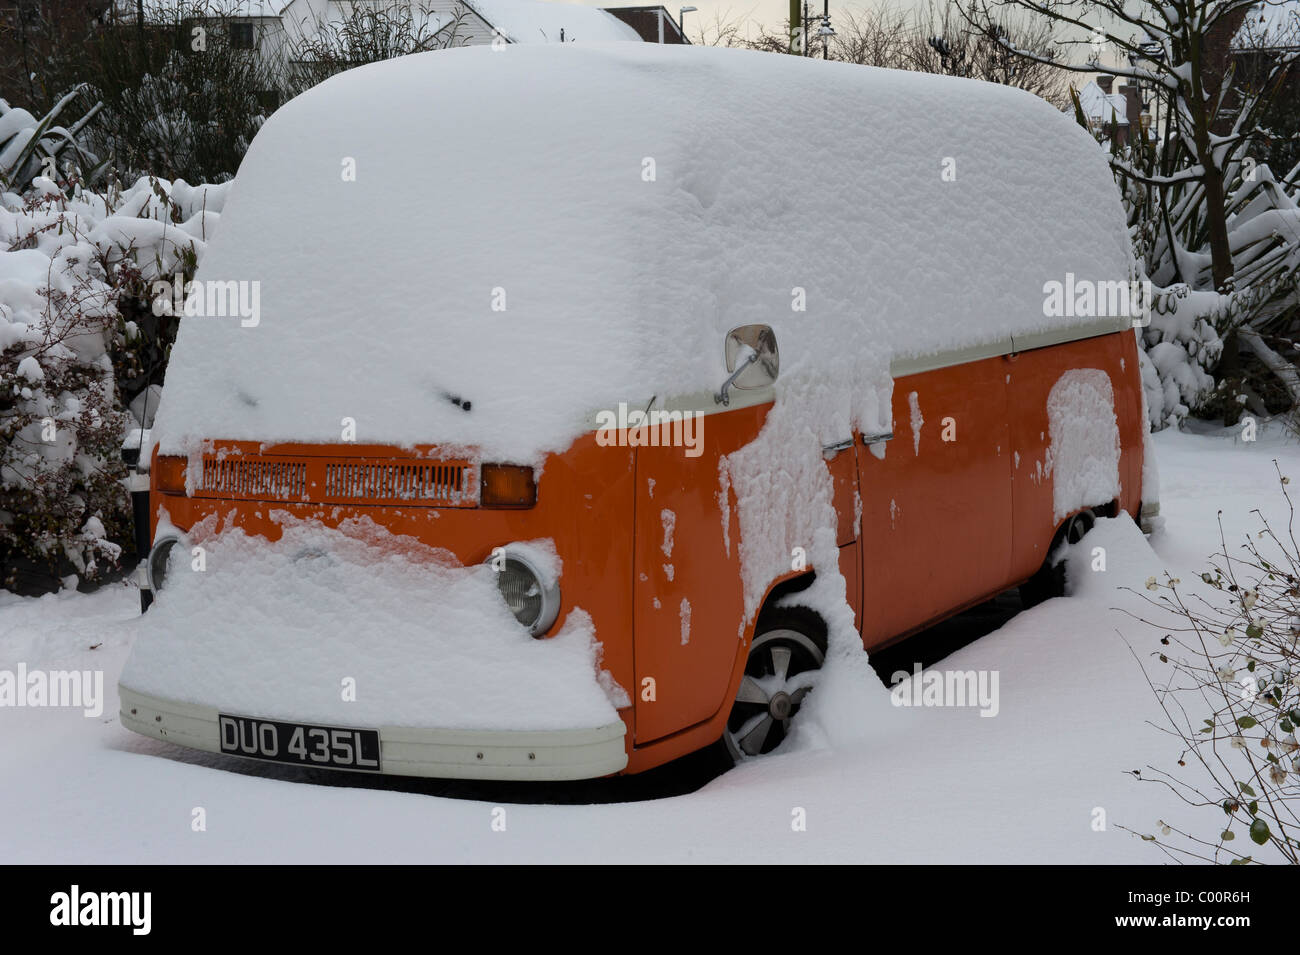 A snowed under orange Volkswagen Camper van Stock Photo